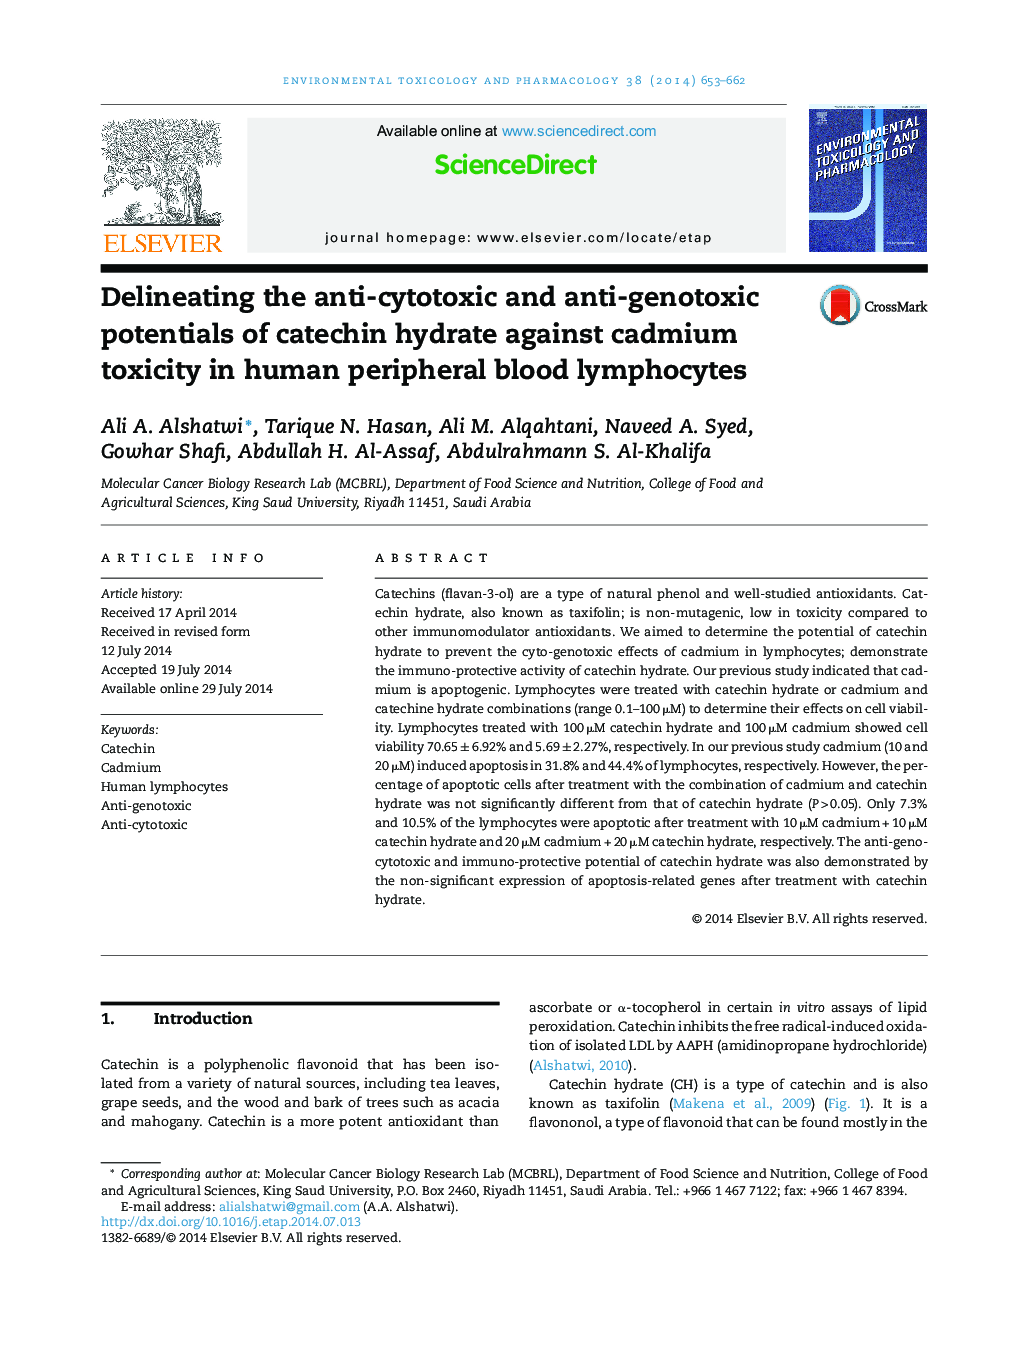 تعیین پتانسیل ضد سیتوتوکسی و ضد ژنوتیسی هیدرات کاتچین بر روی سمیت کادمیوم در لنفوسیت های خون محیطی انسان 